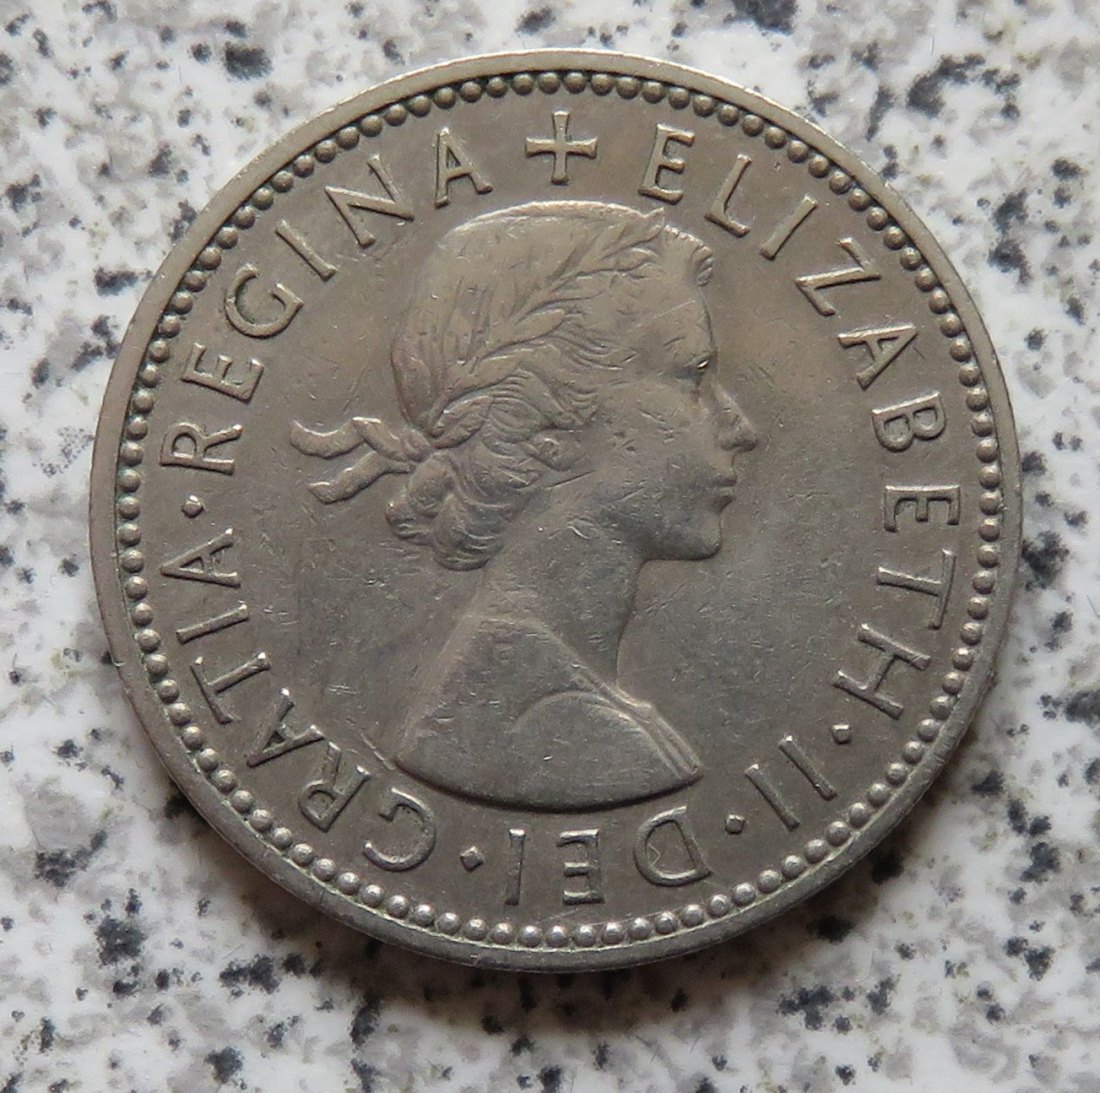  Großbritannien 1 Shilling 1955, Schottisch (2)   